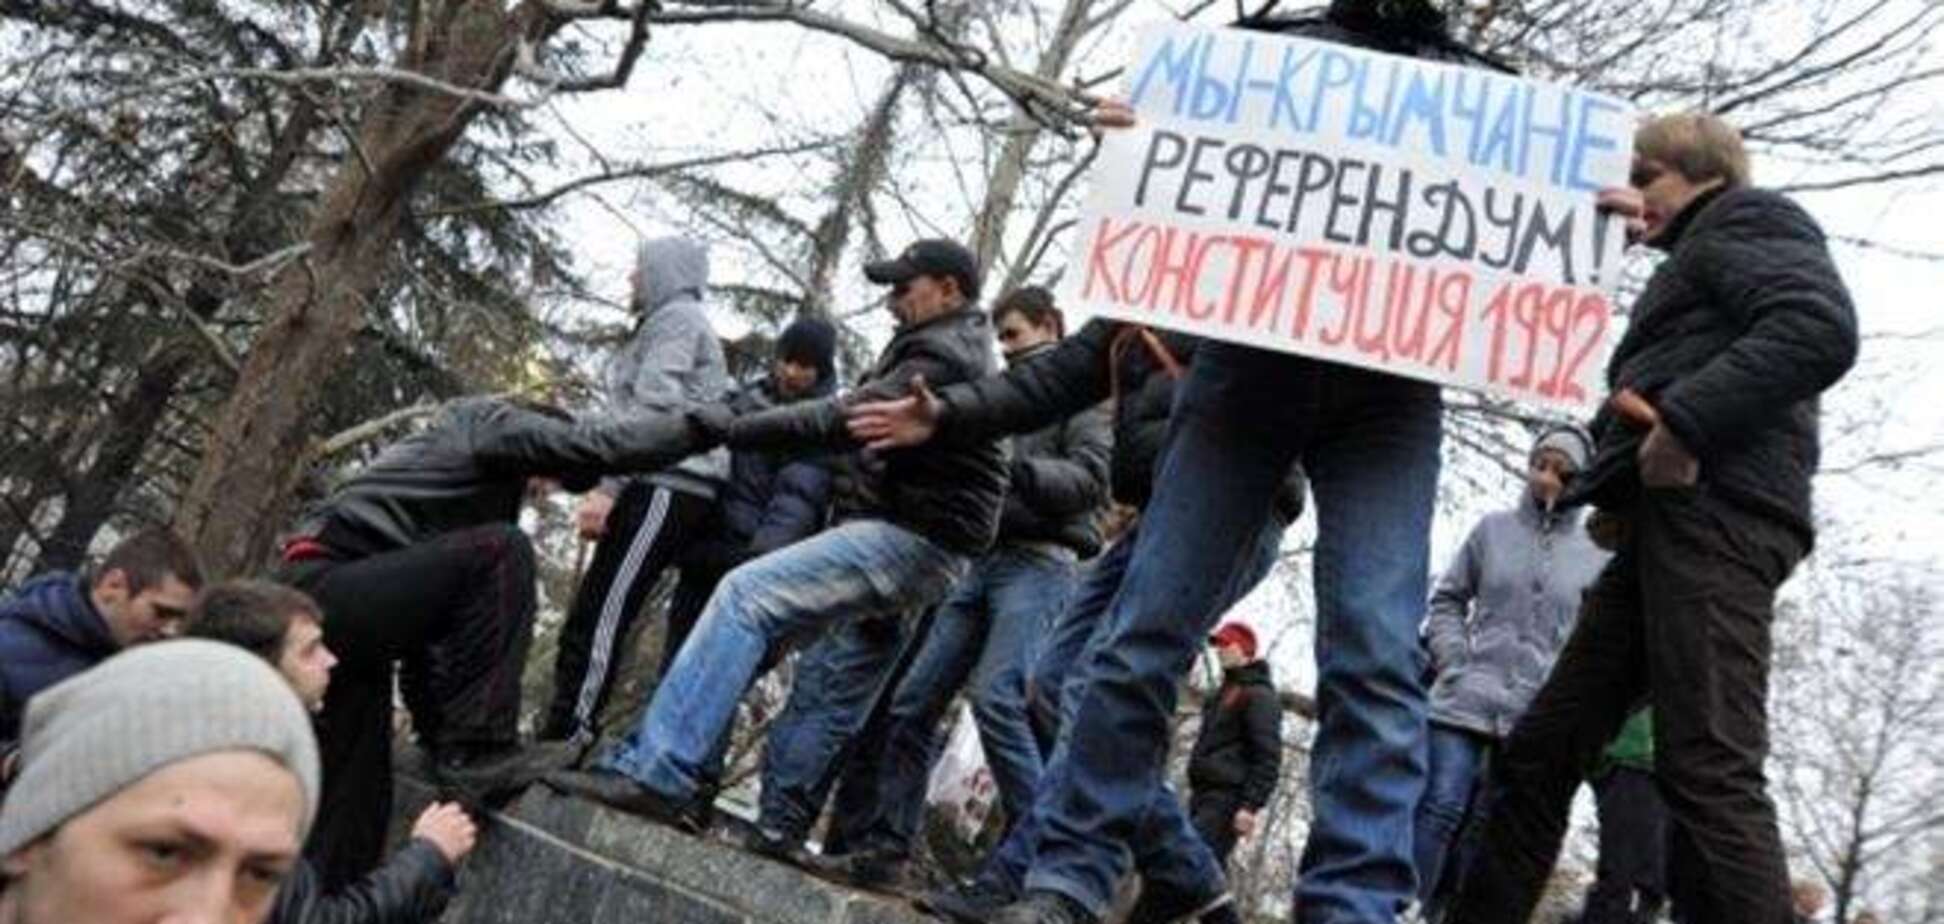 Крымчан заставляют идти на референдум под дулами автоматов - депутат